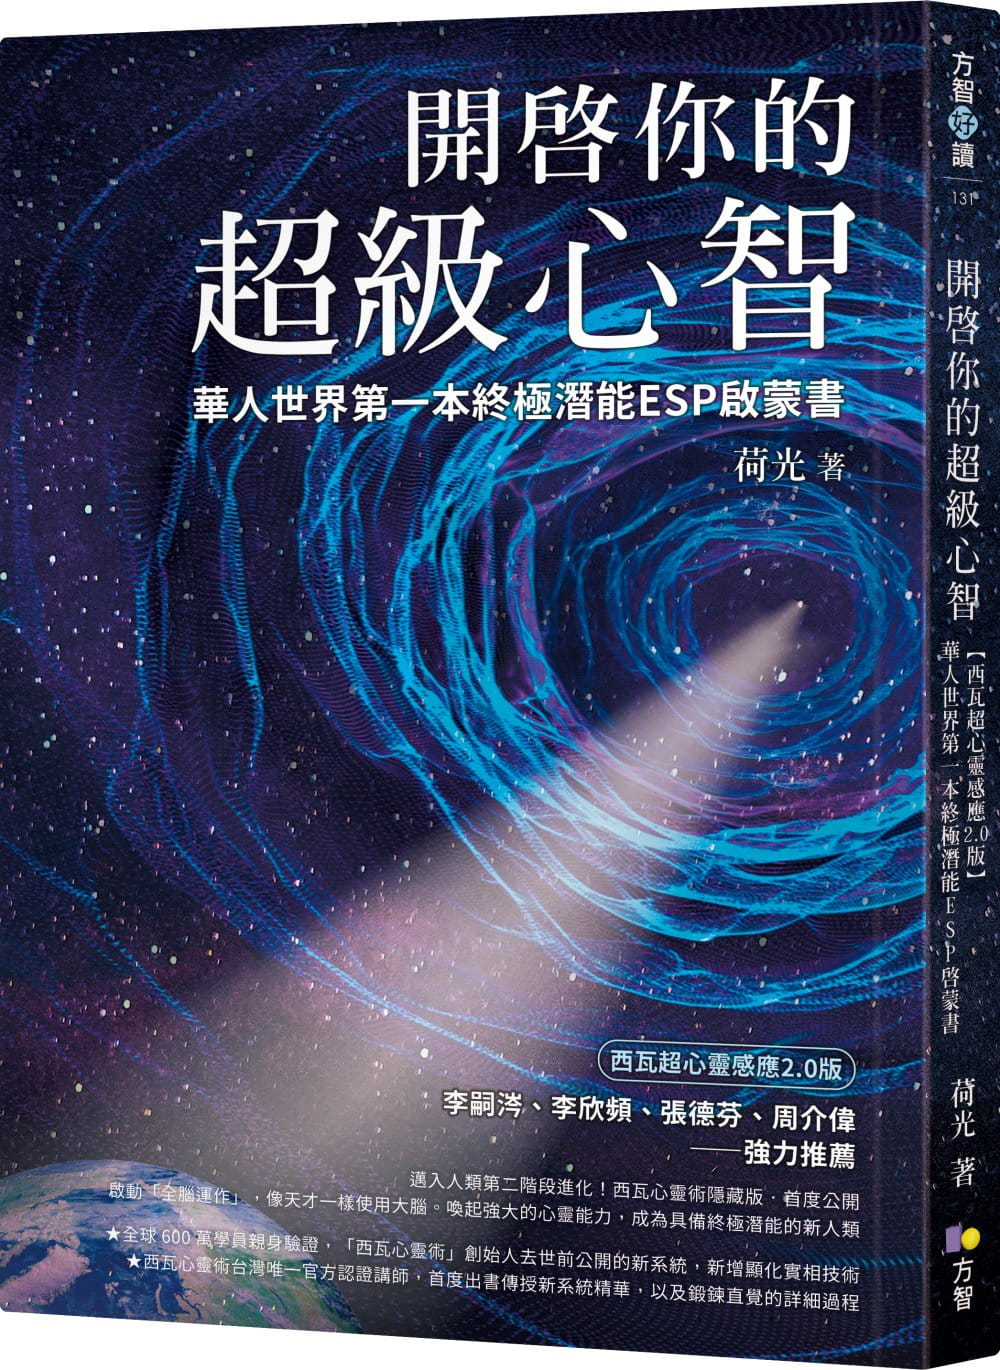 開啟你的超級心智：【西瓦超心靈感應2.0版】華人世界第一本終極潛能ESP啟蒙書